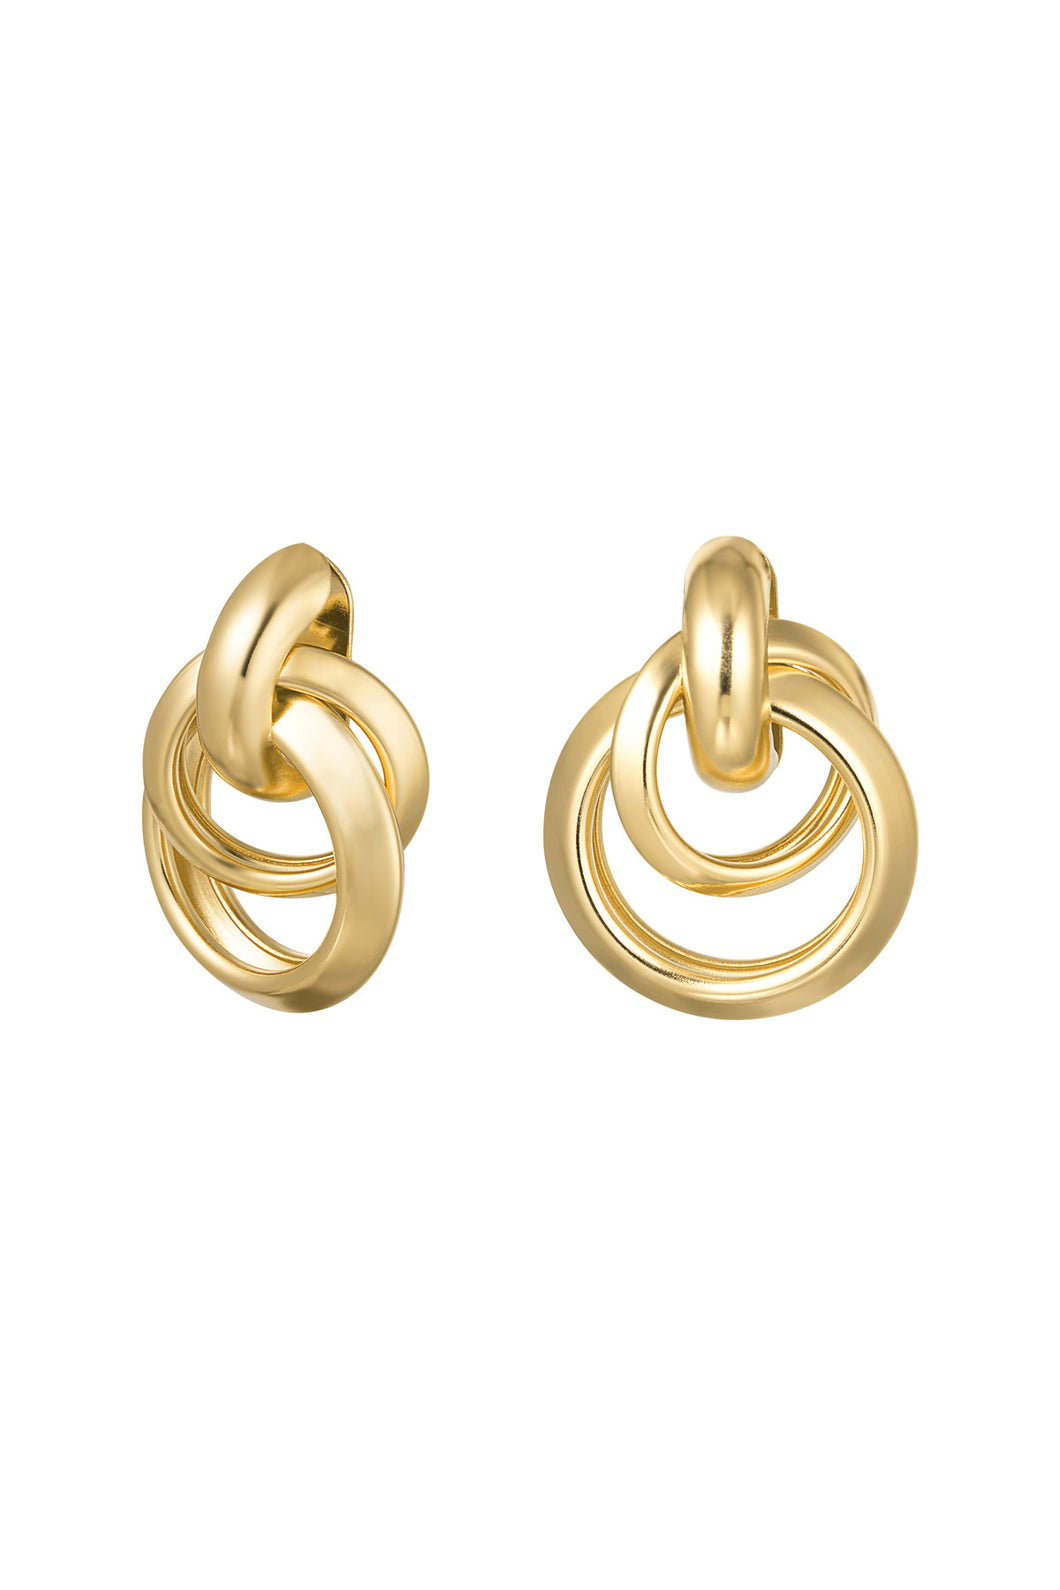 Gouden oorbellen in fantasie vorm, type oorstekers. Deze mooie oorbellen zijn van goudkleurig stainless steel. De afmeting van deze oorbellen is 2cm x 2cm.